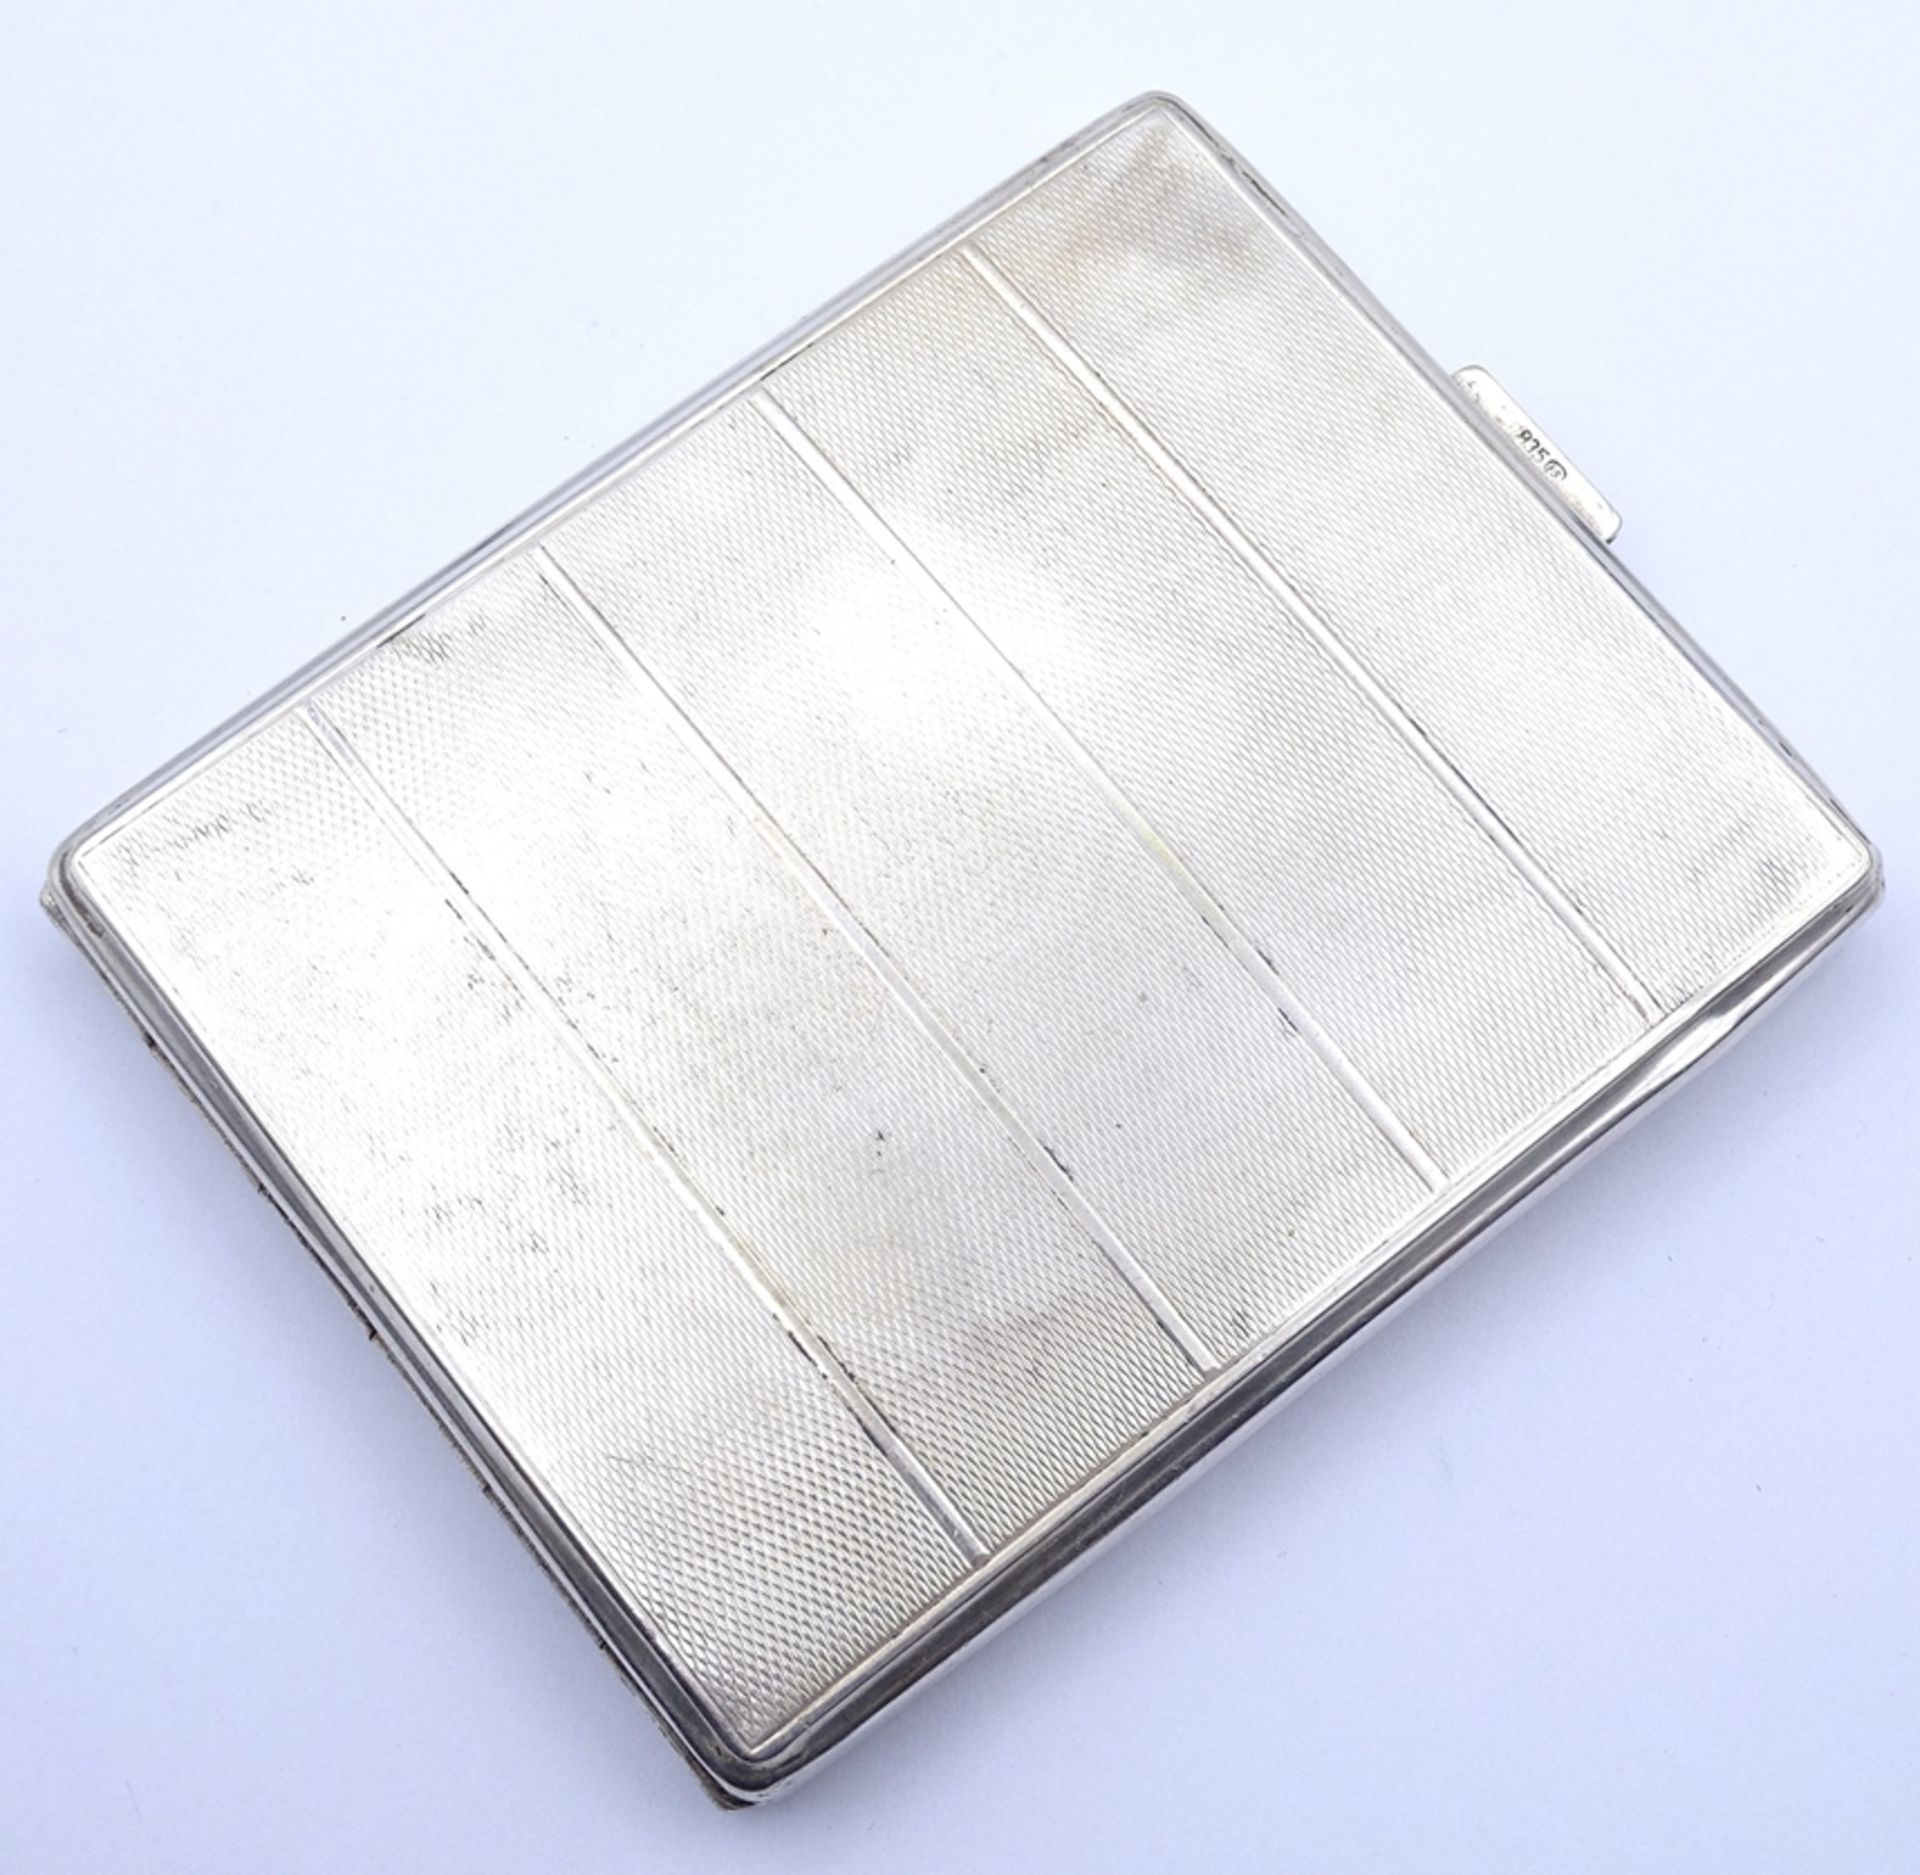 Zigaretten Etui in 835er Silber, Innengravur 25.5.58 Gila, 8,2x10cm, 105g. - Image 2 of 4